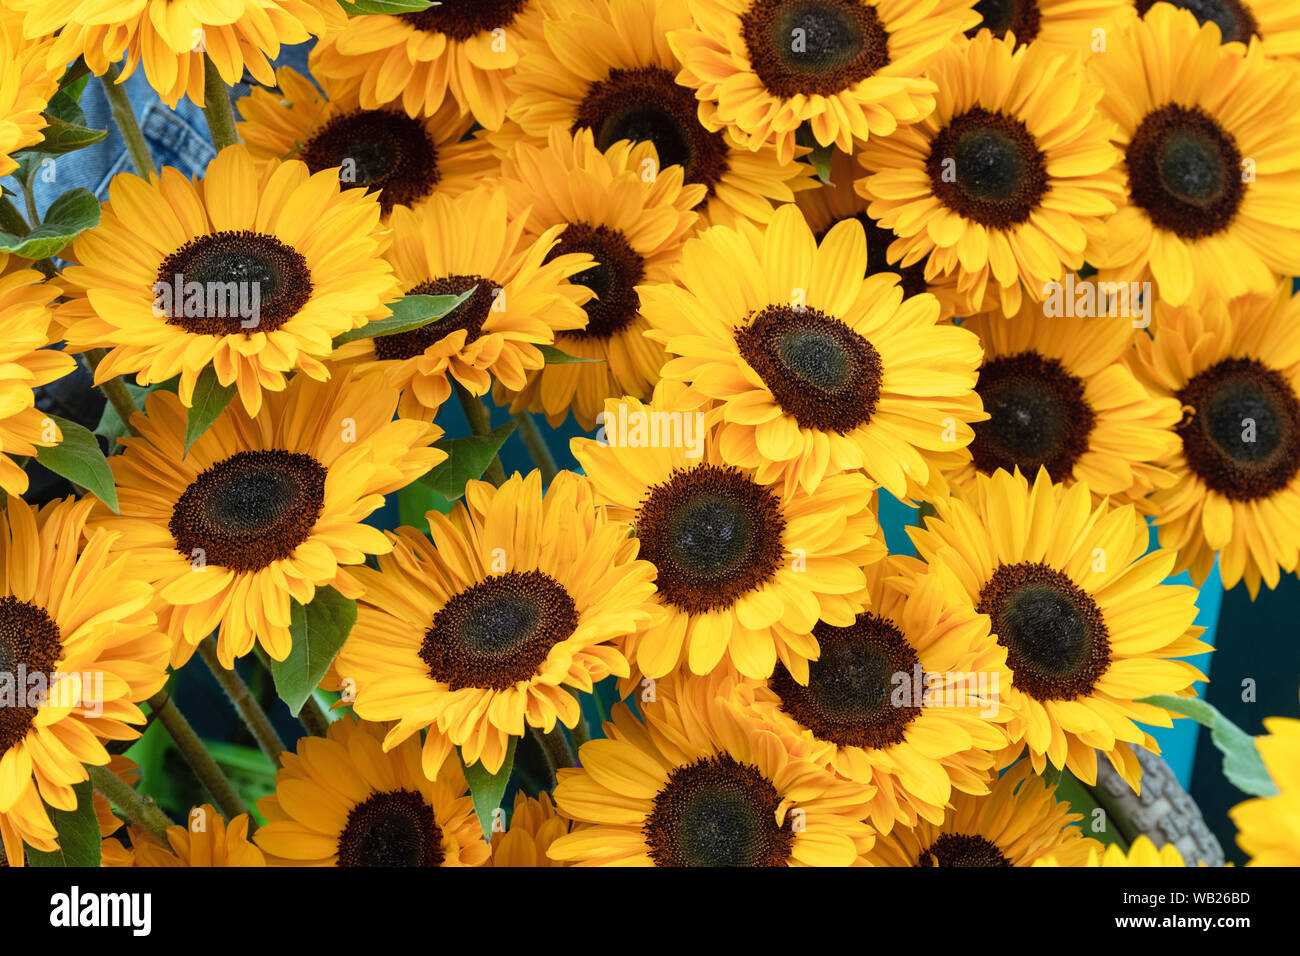 Von Helianthus annuus unrich Provence'. Sonnenblumen in einer Anzeige an eine Blume zeigen Stockfoto